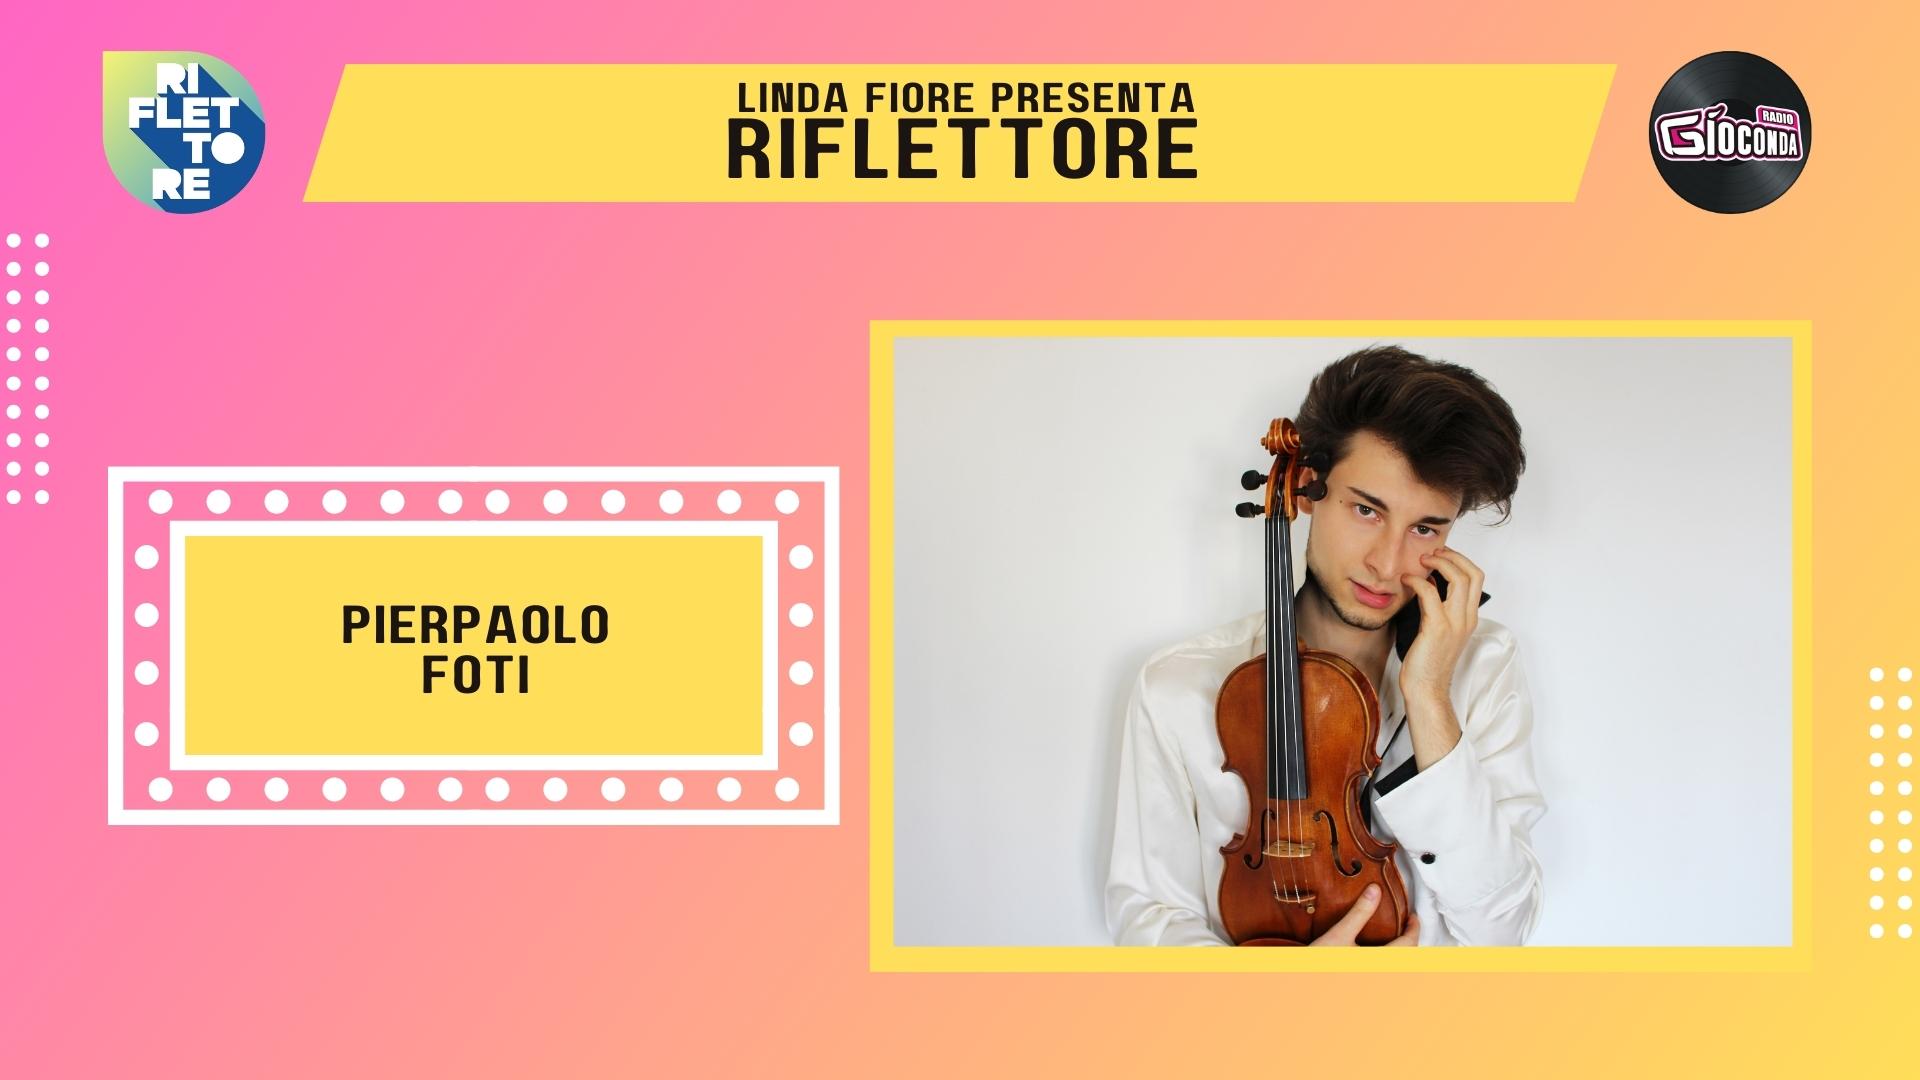 Pierpaolo Foti, classe 1997, è l’artista, musicista, violinista e compositore, ospite della nuova puntata di “Riflettore” in onda venerdì 28 aprile alle 14.30 (replica ore 20.30).